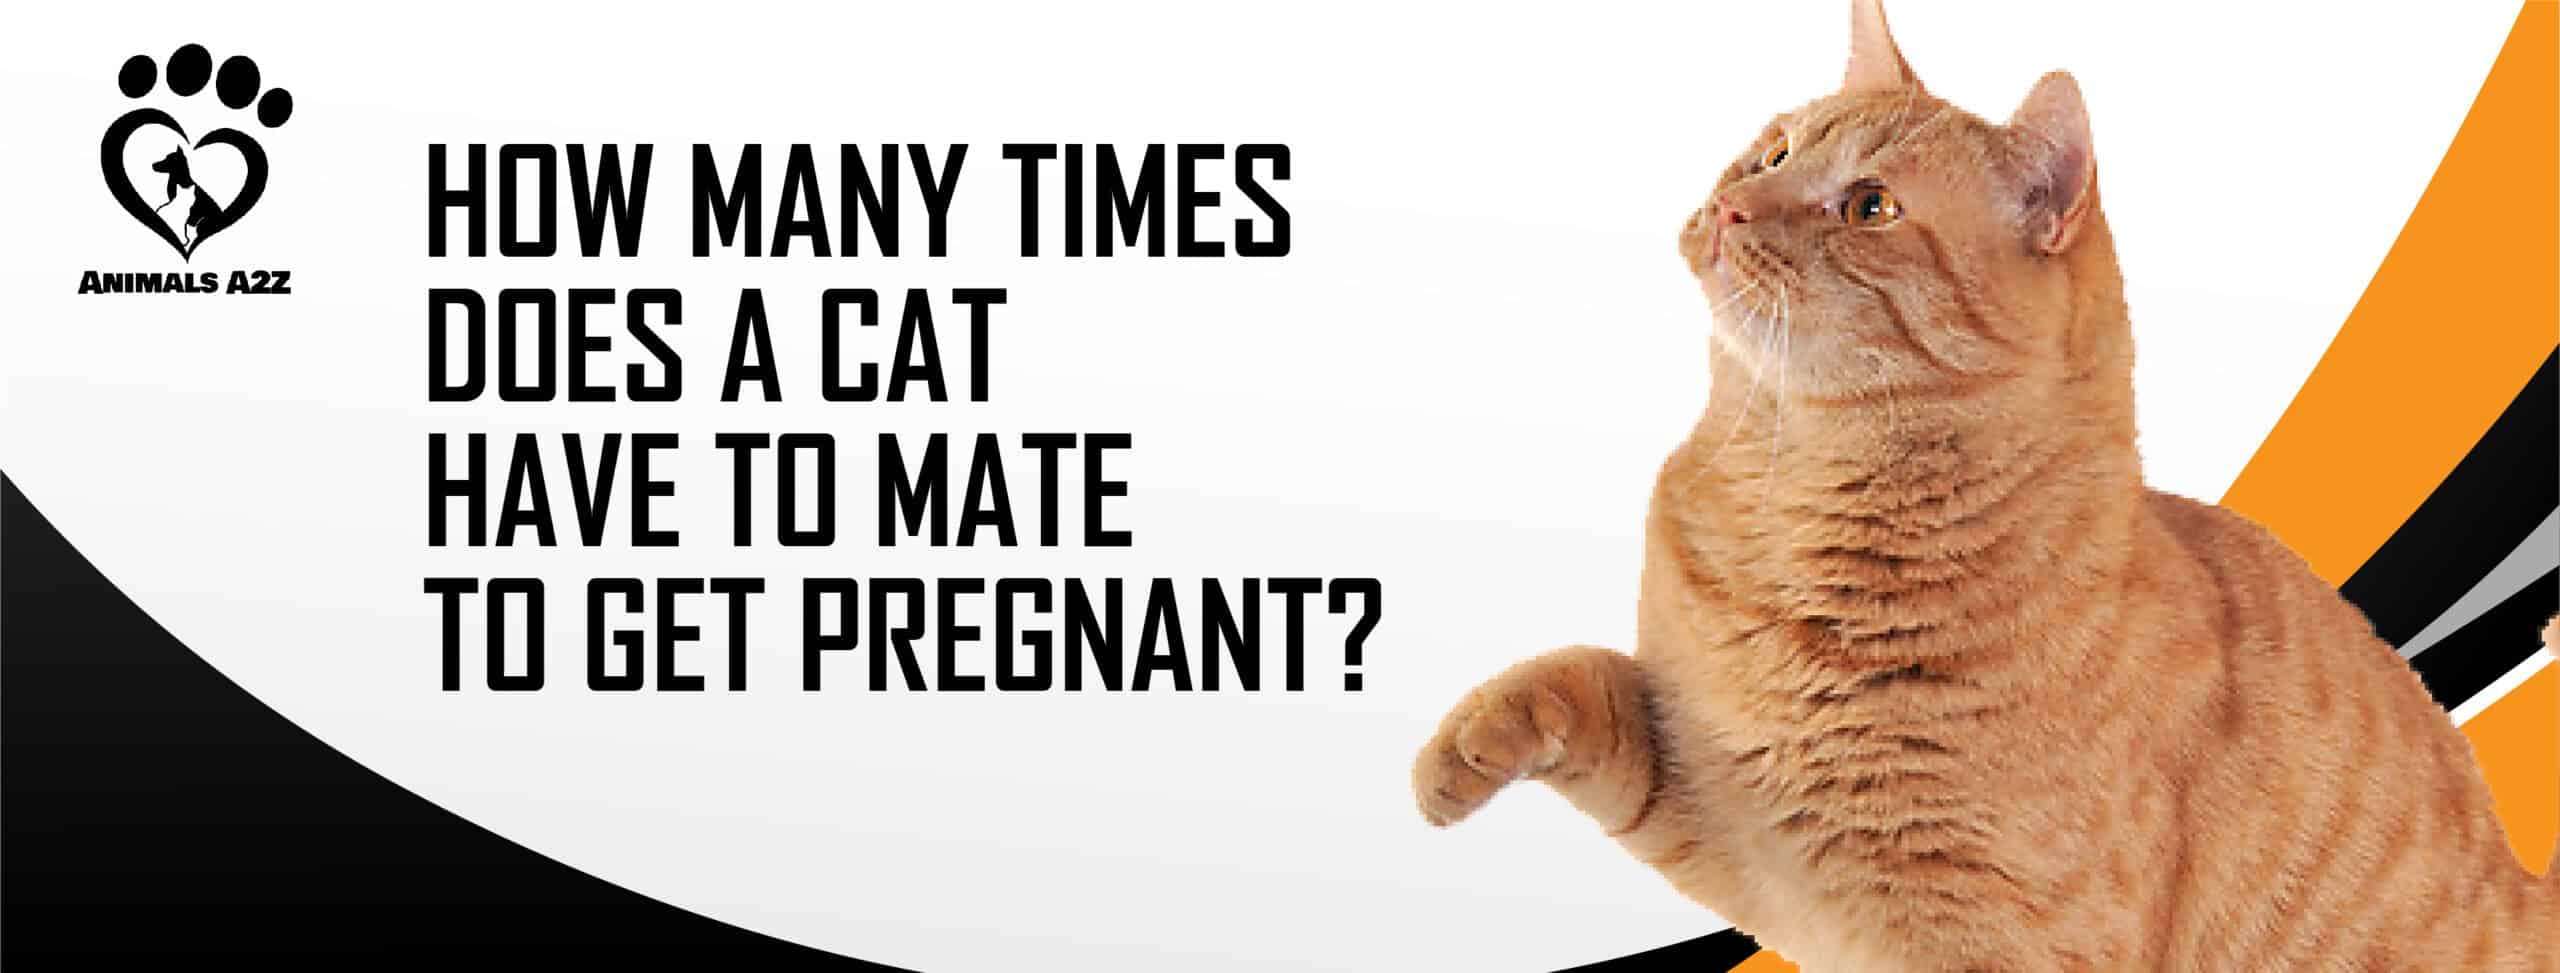 Combien de fois une chatte doit-elle s'accoupler pour être enceinte ?